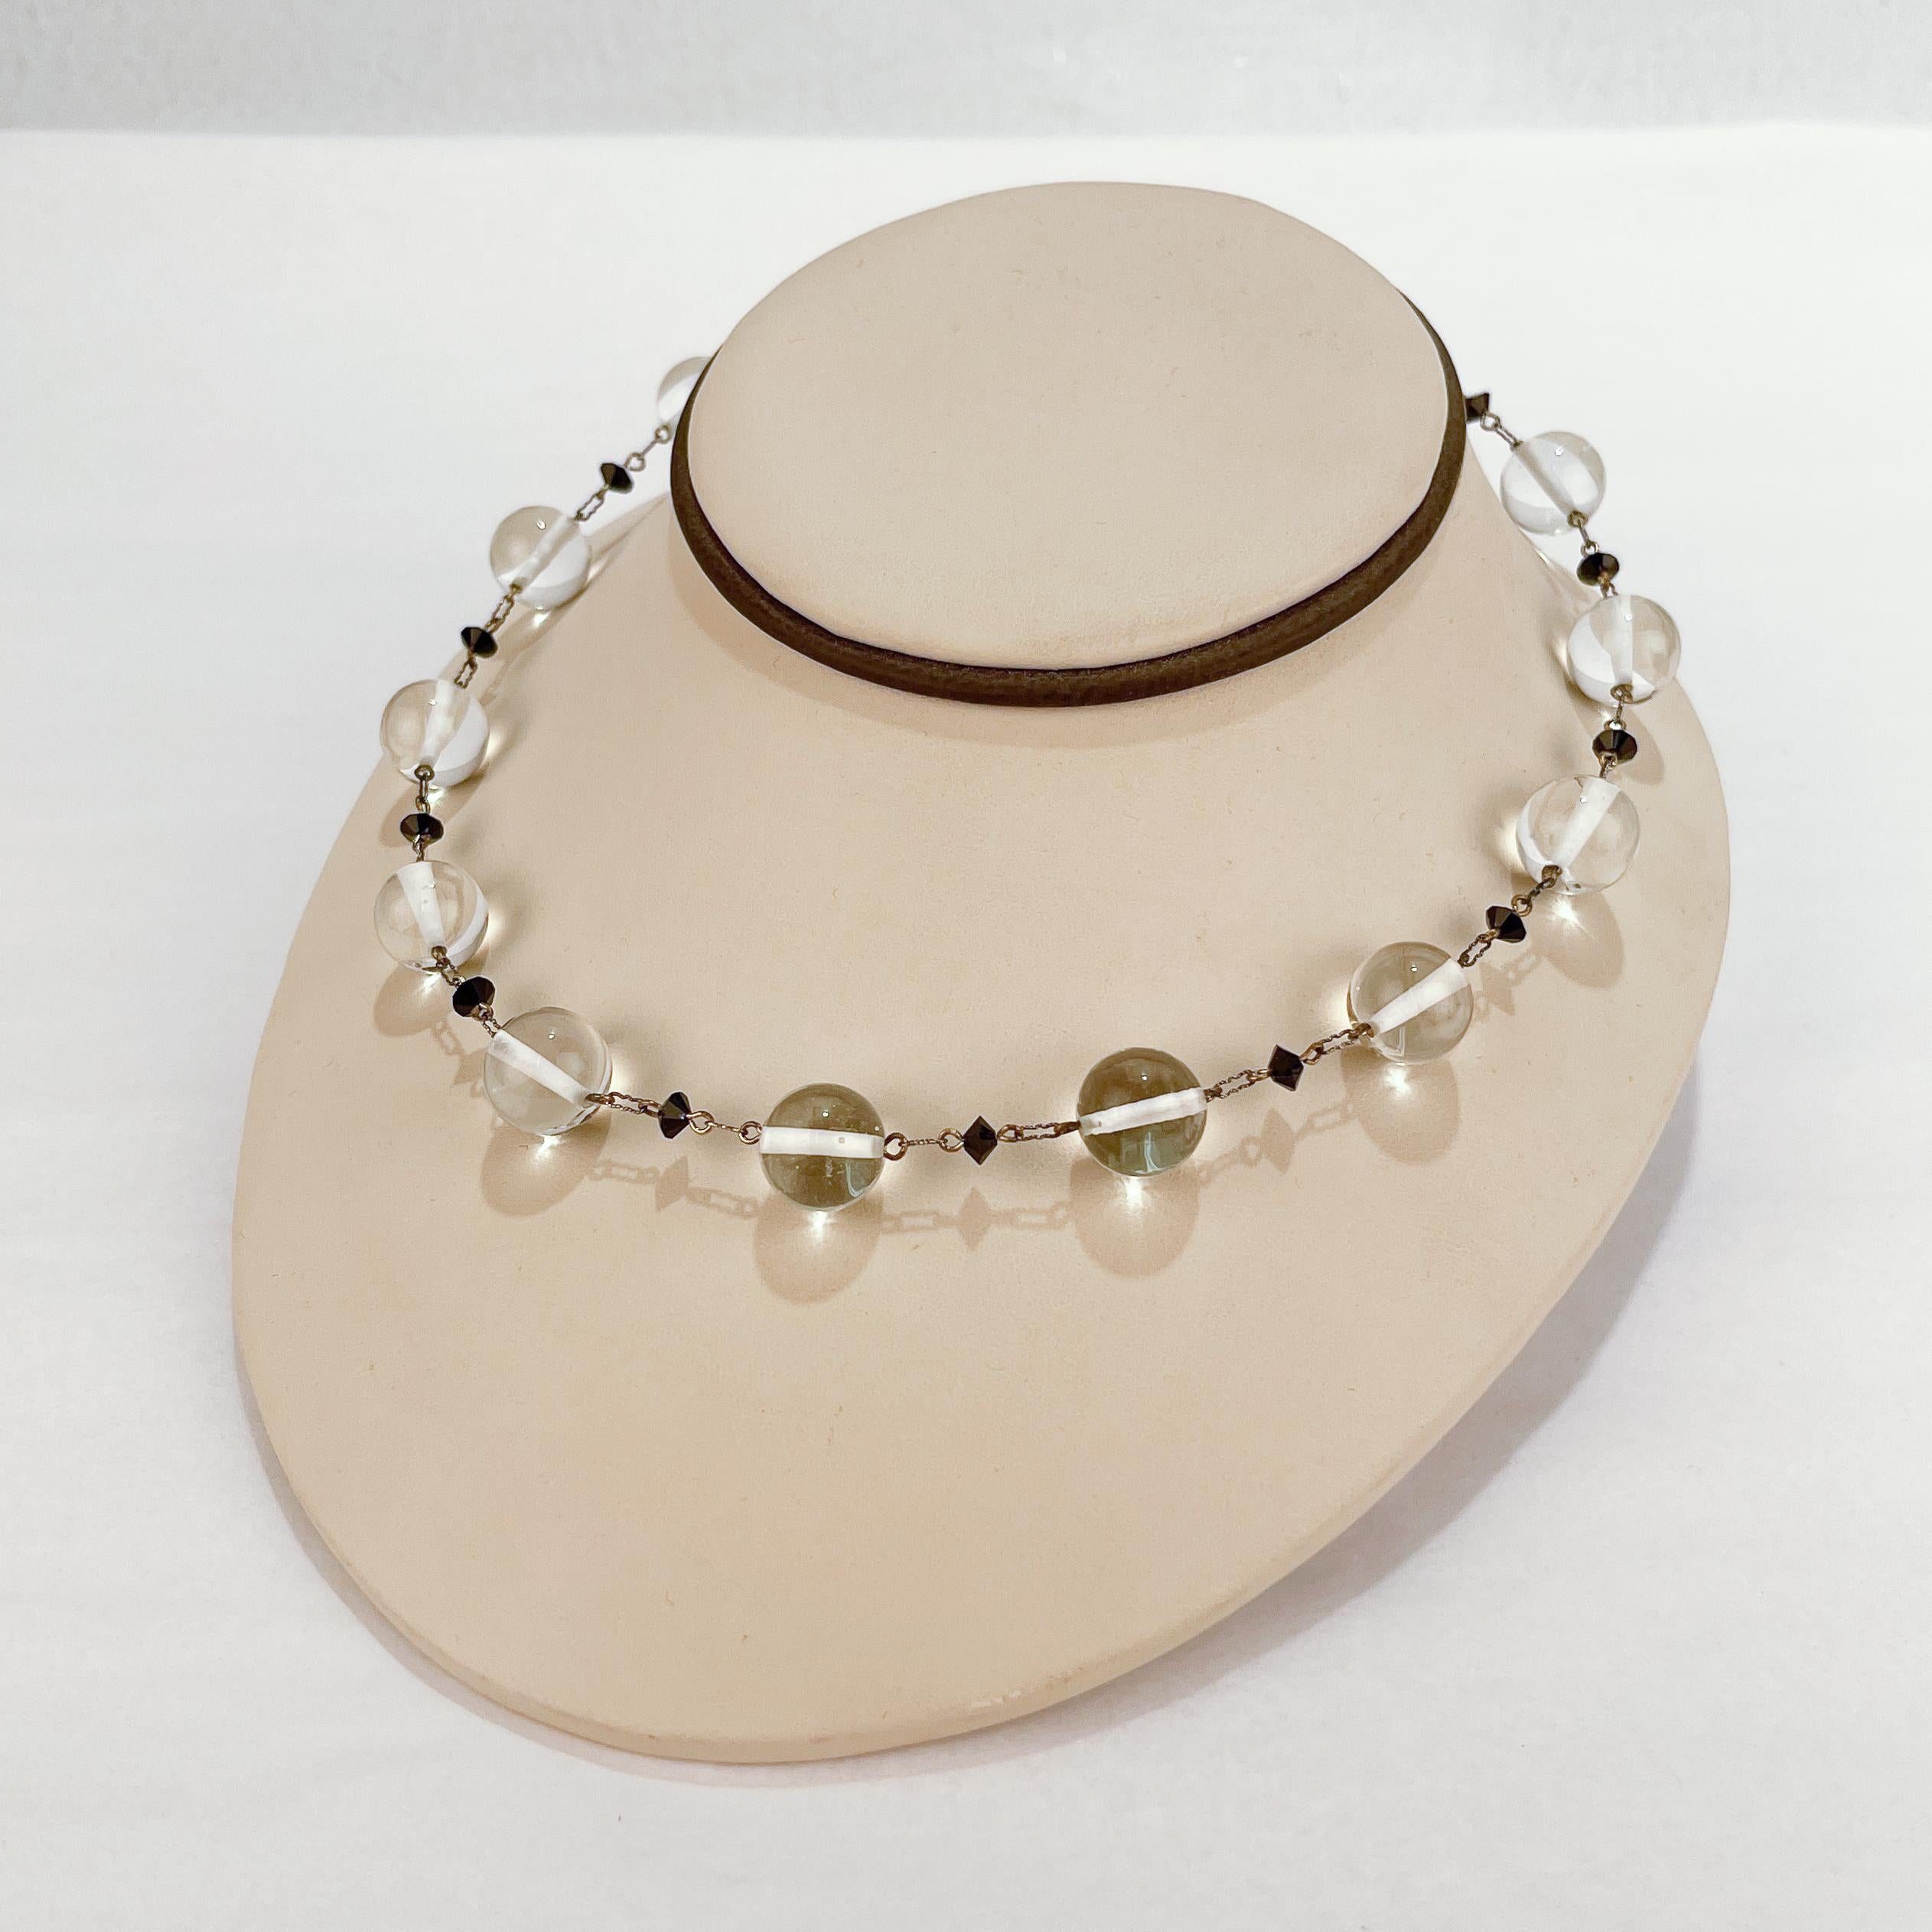 Eine sehr schöne Retro-Glasperlen- und Sterlingsilber-Halskette.

Mit abwechselnd klaren 13 mm und schwarzen facettierten Glasperlen.

Jede Perle ist in der Mitte mit einem Sterling-Stab vernietet, der mit der nächsten Perle durch ein silbernes